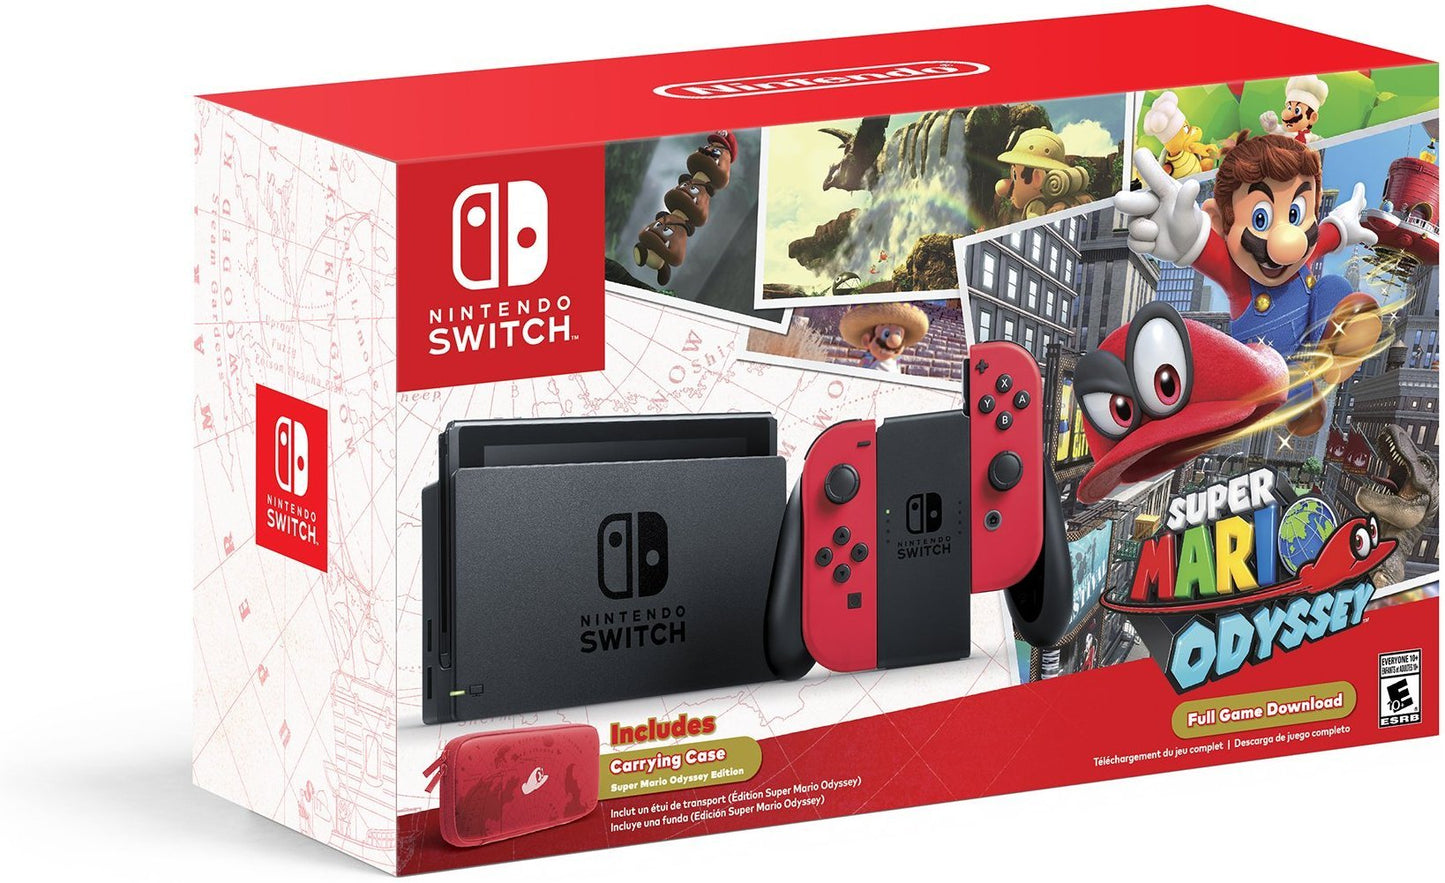 J2Games.com | Nintendo Switch - Super Mario Odyssey Edition (Nintendo Switch) (Brand New).